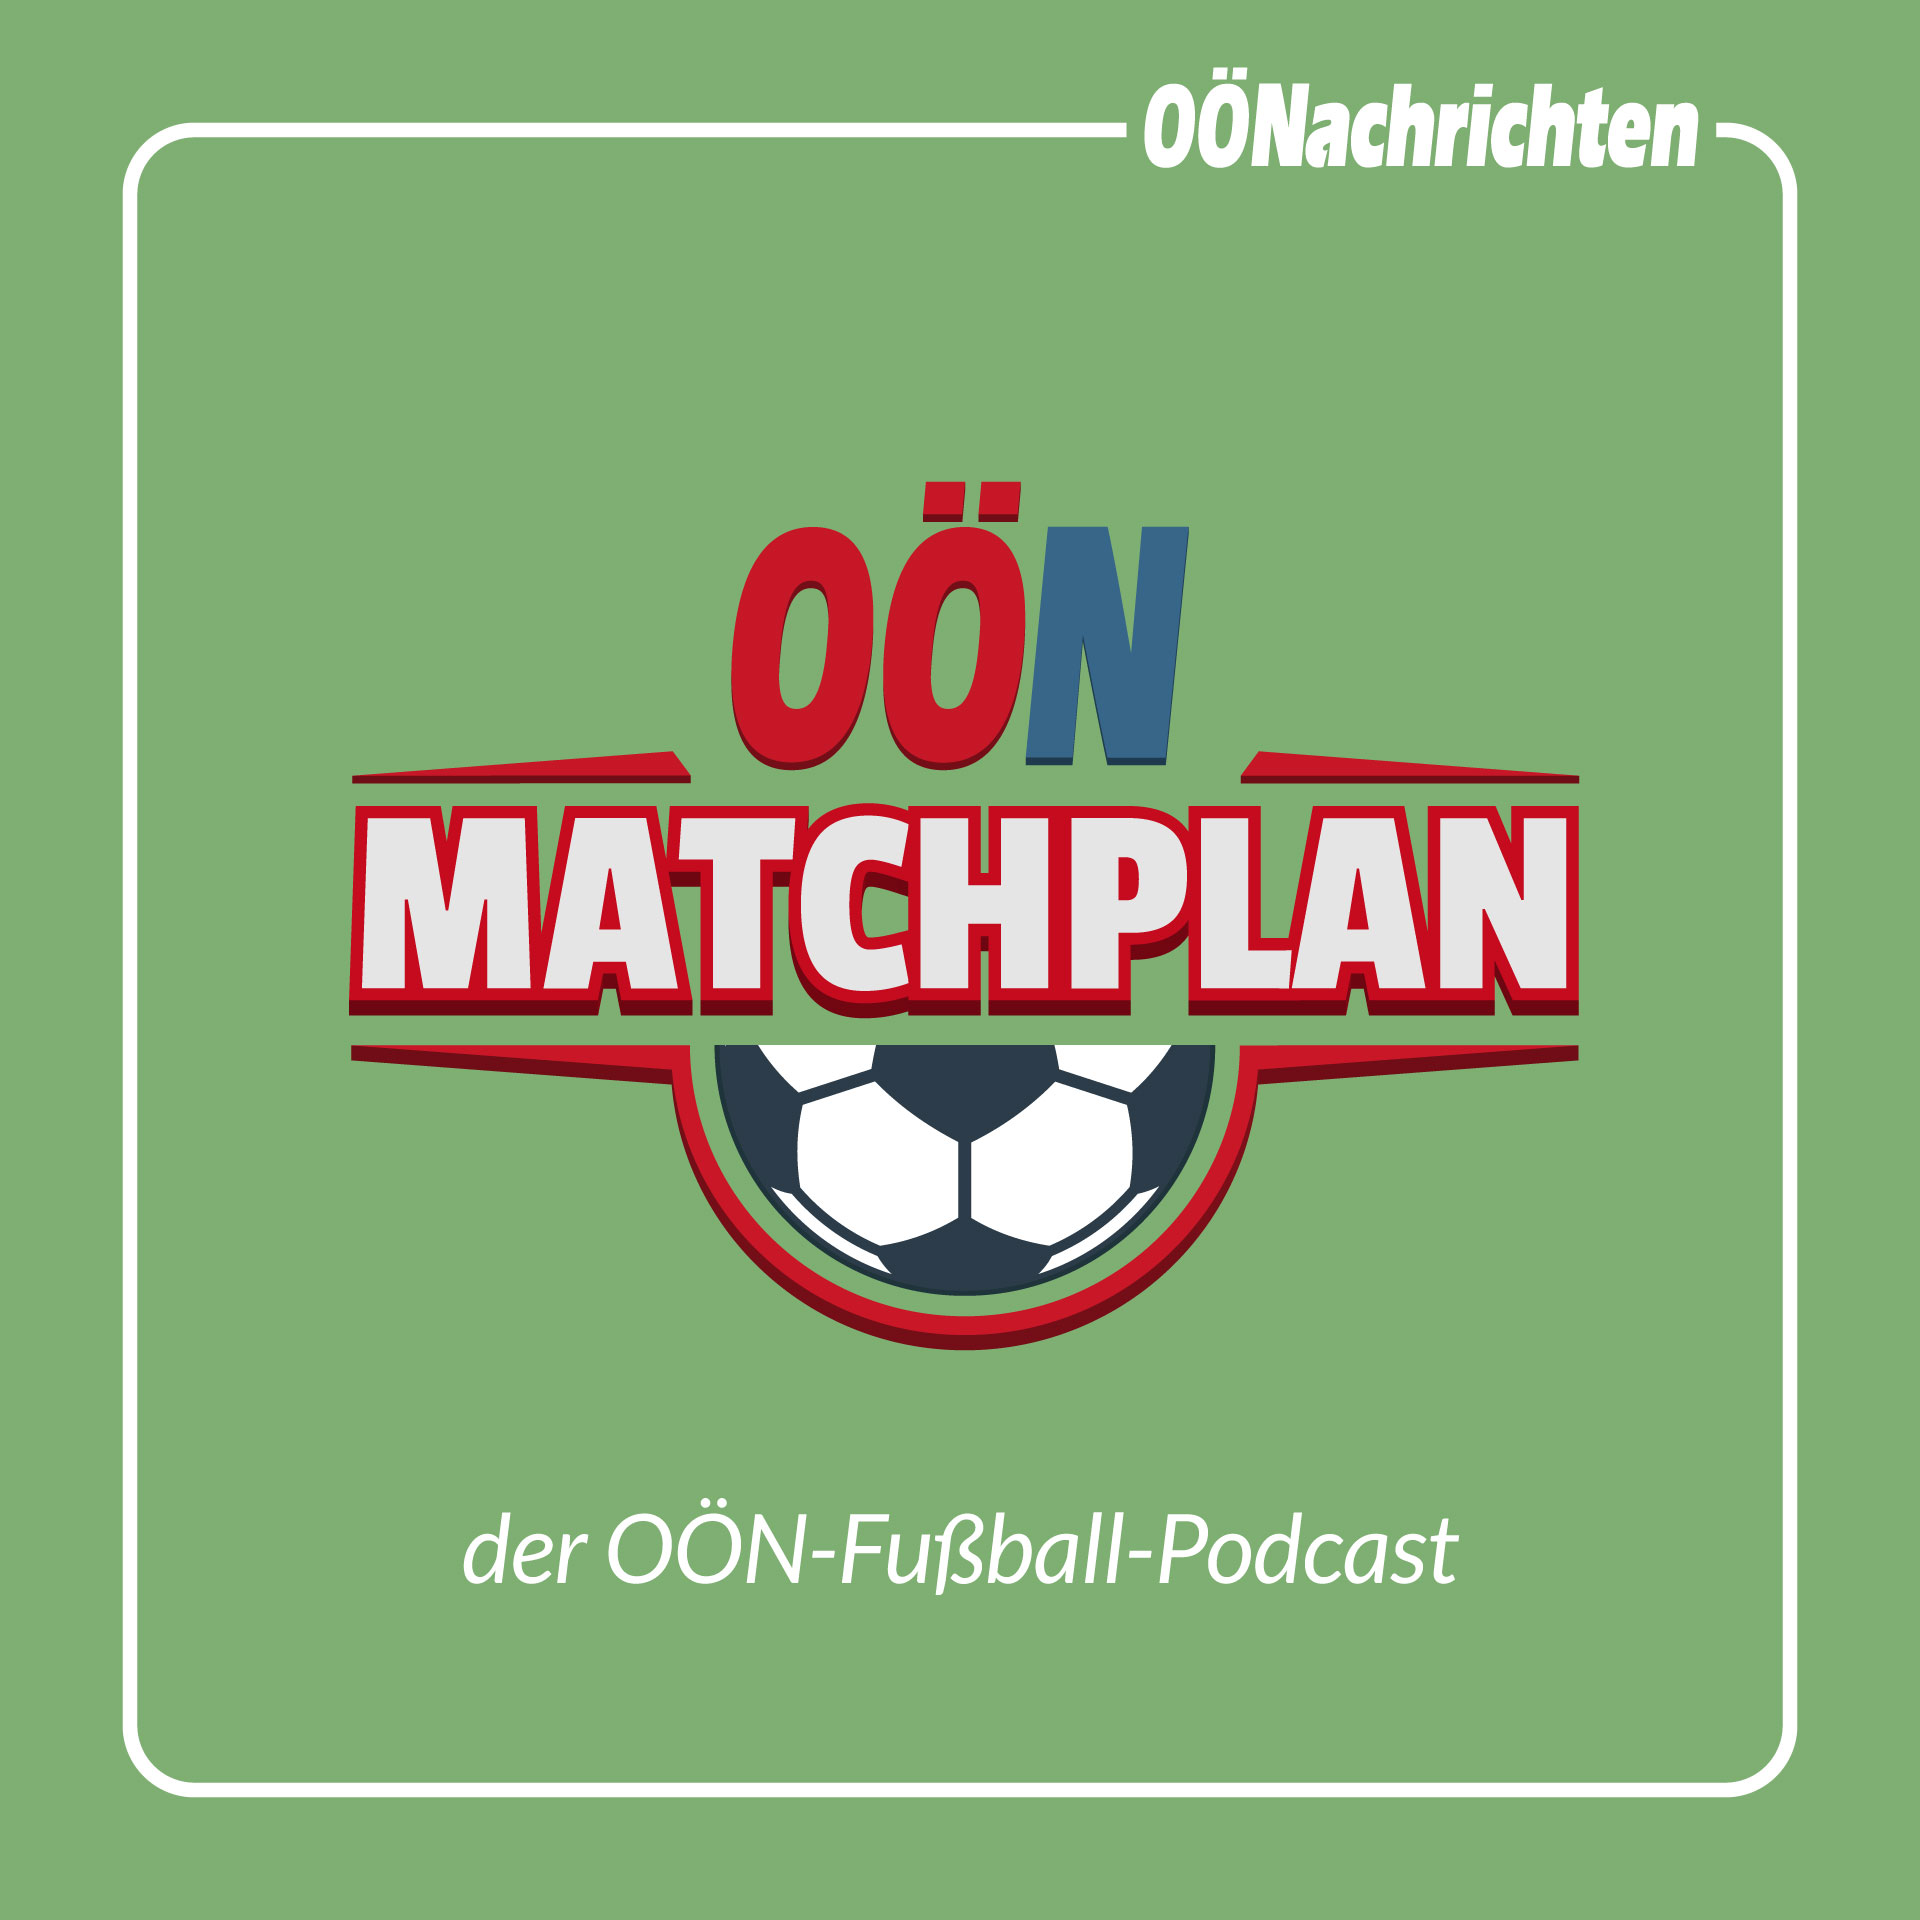 Matchplan #006 - Nach Liverpool ist vor Austria Wien: "Da ist alles offen"